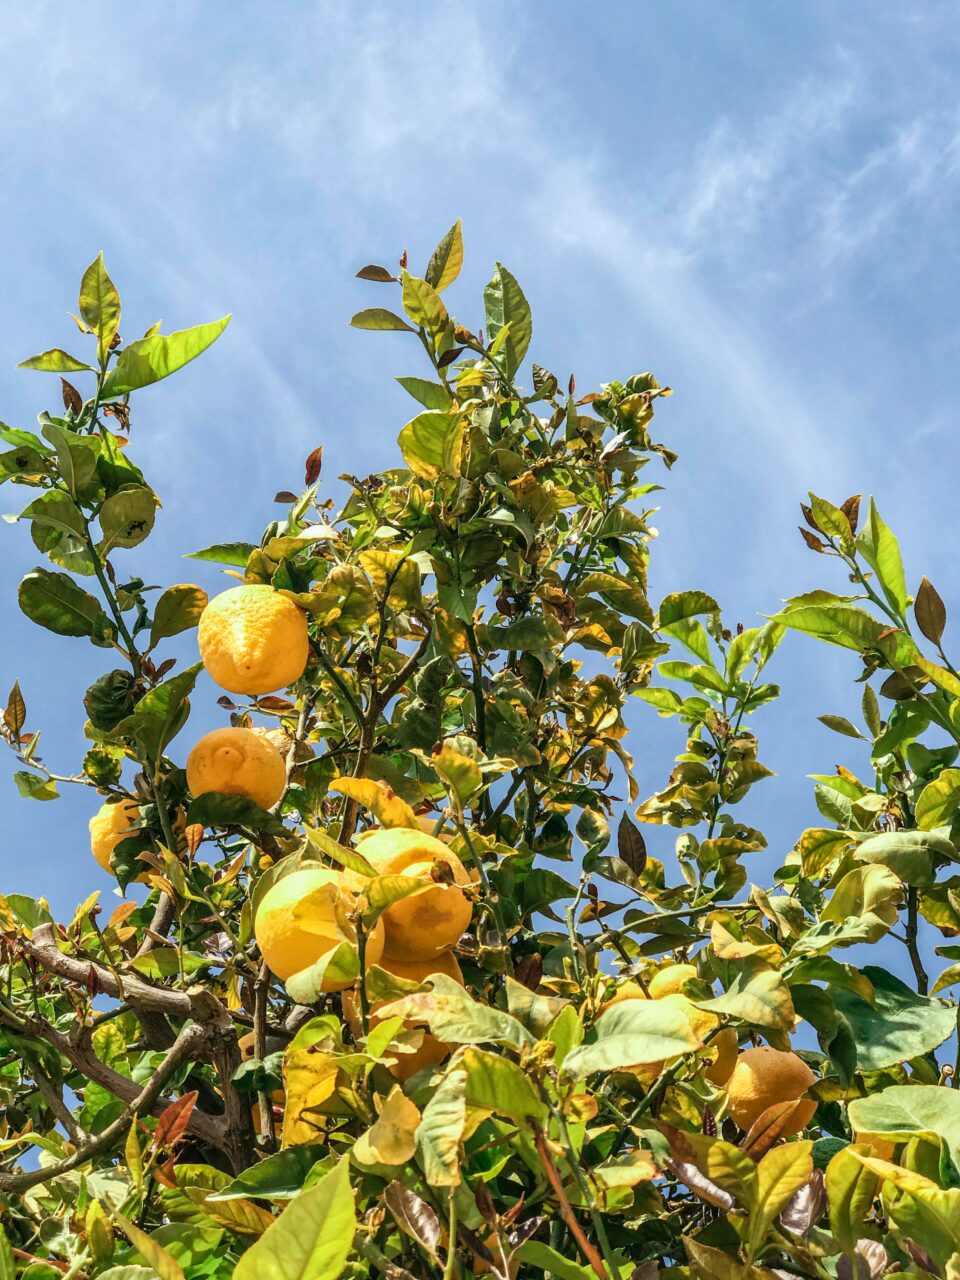 Zitronenbaum mit Früchten vor einem blauen Himmel